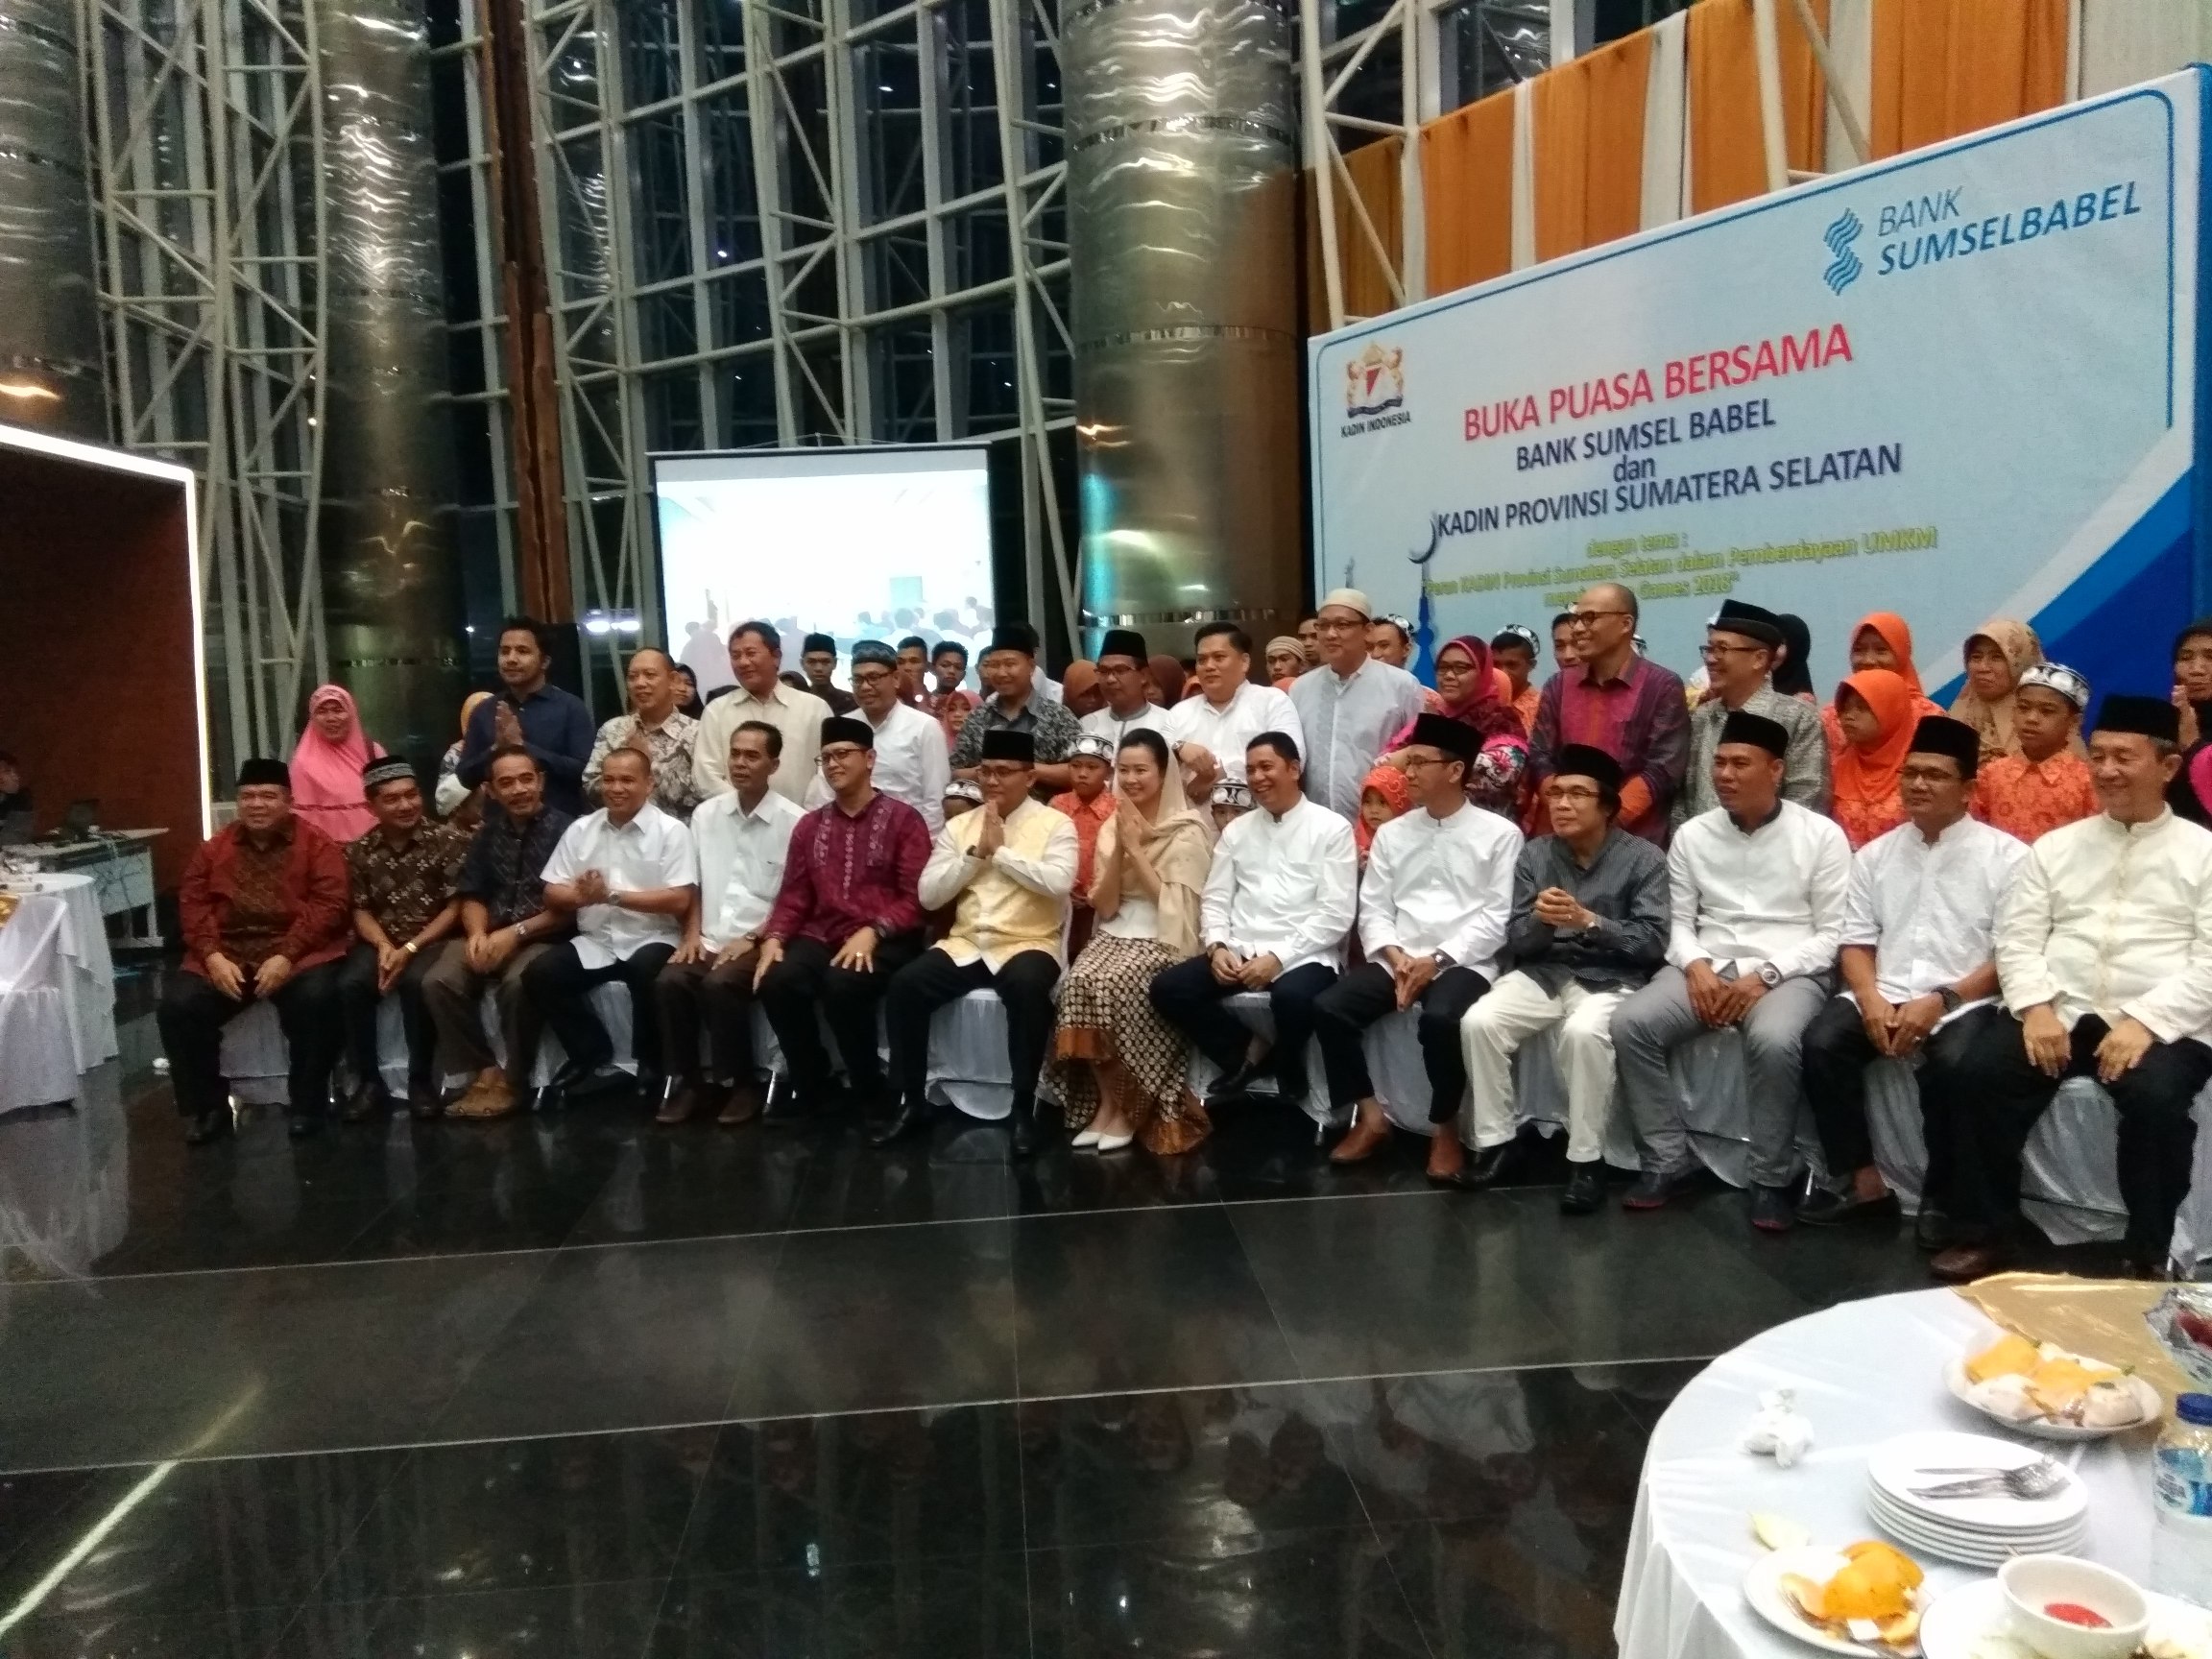 Buka Puasa Bersama Bank Sumsel Babel dan Kadin Provinsi Sumatera Selatan